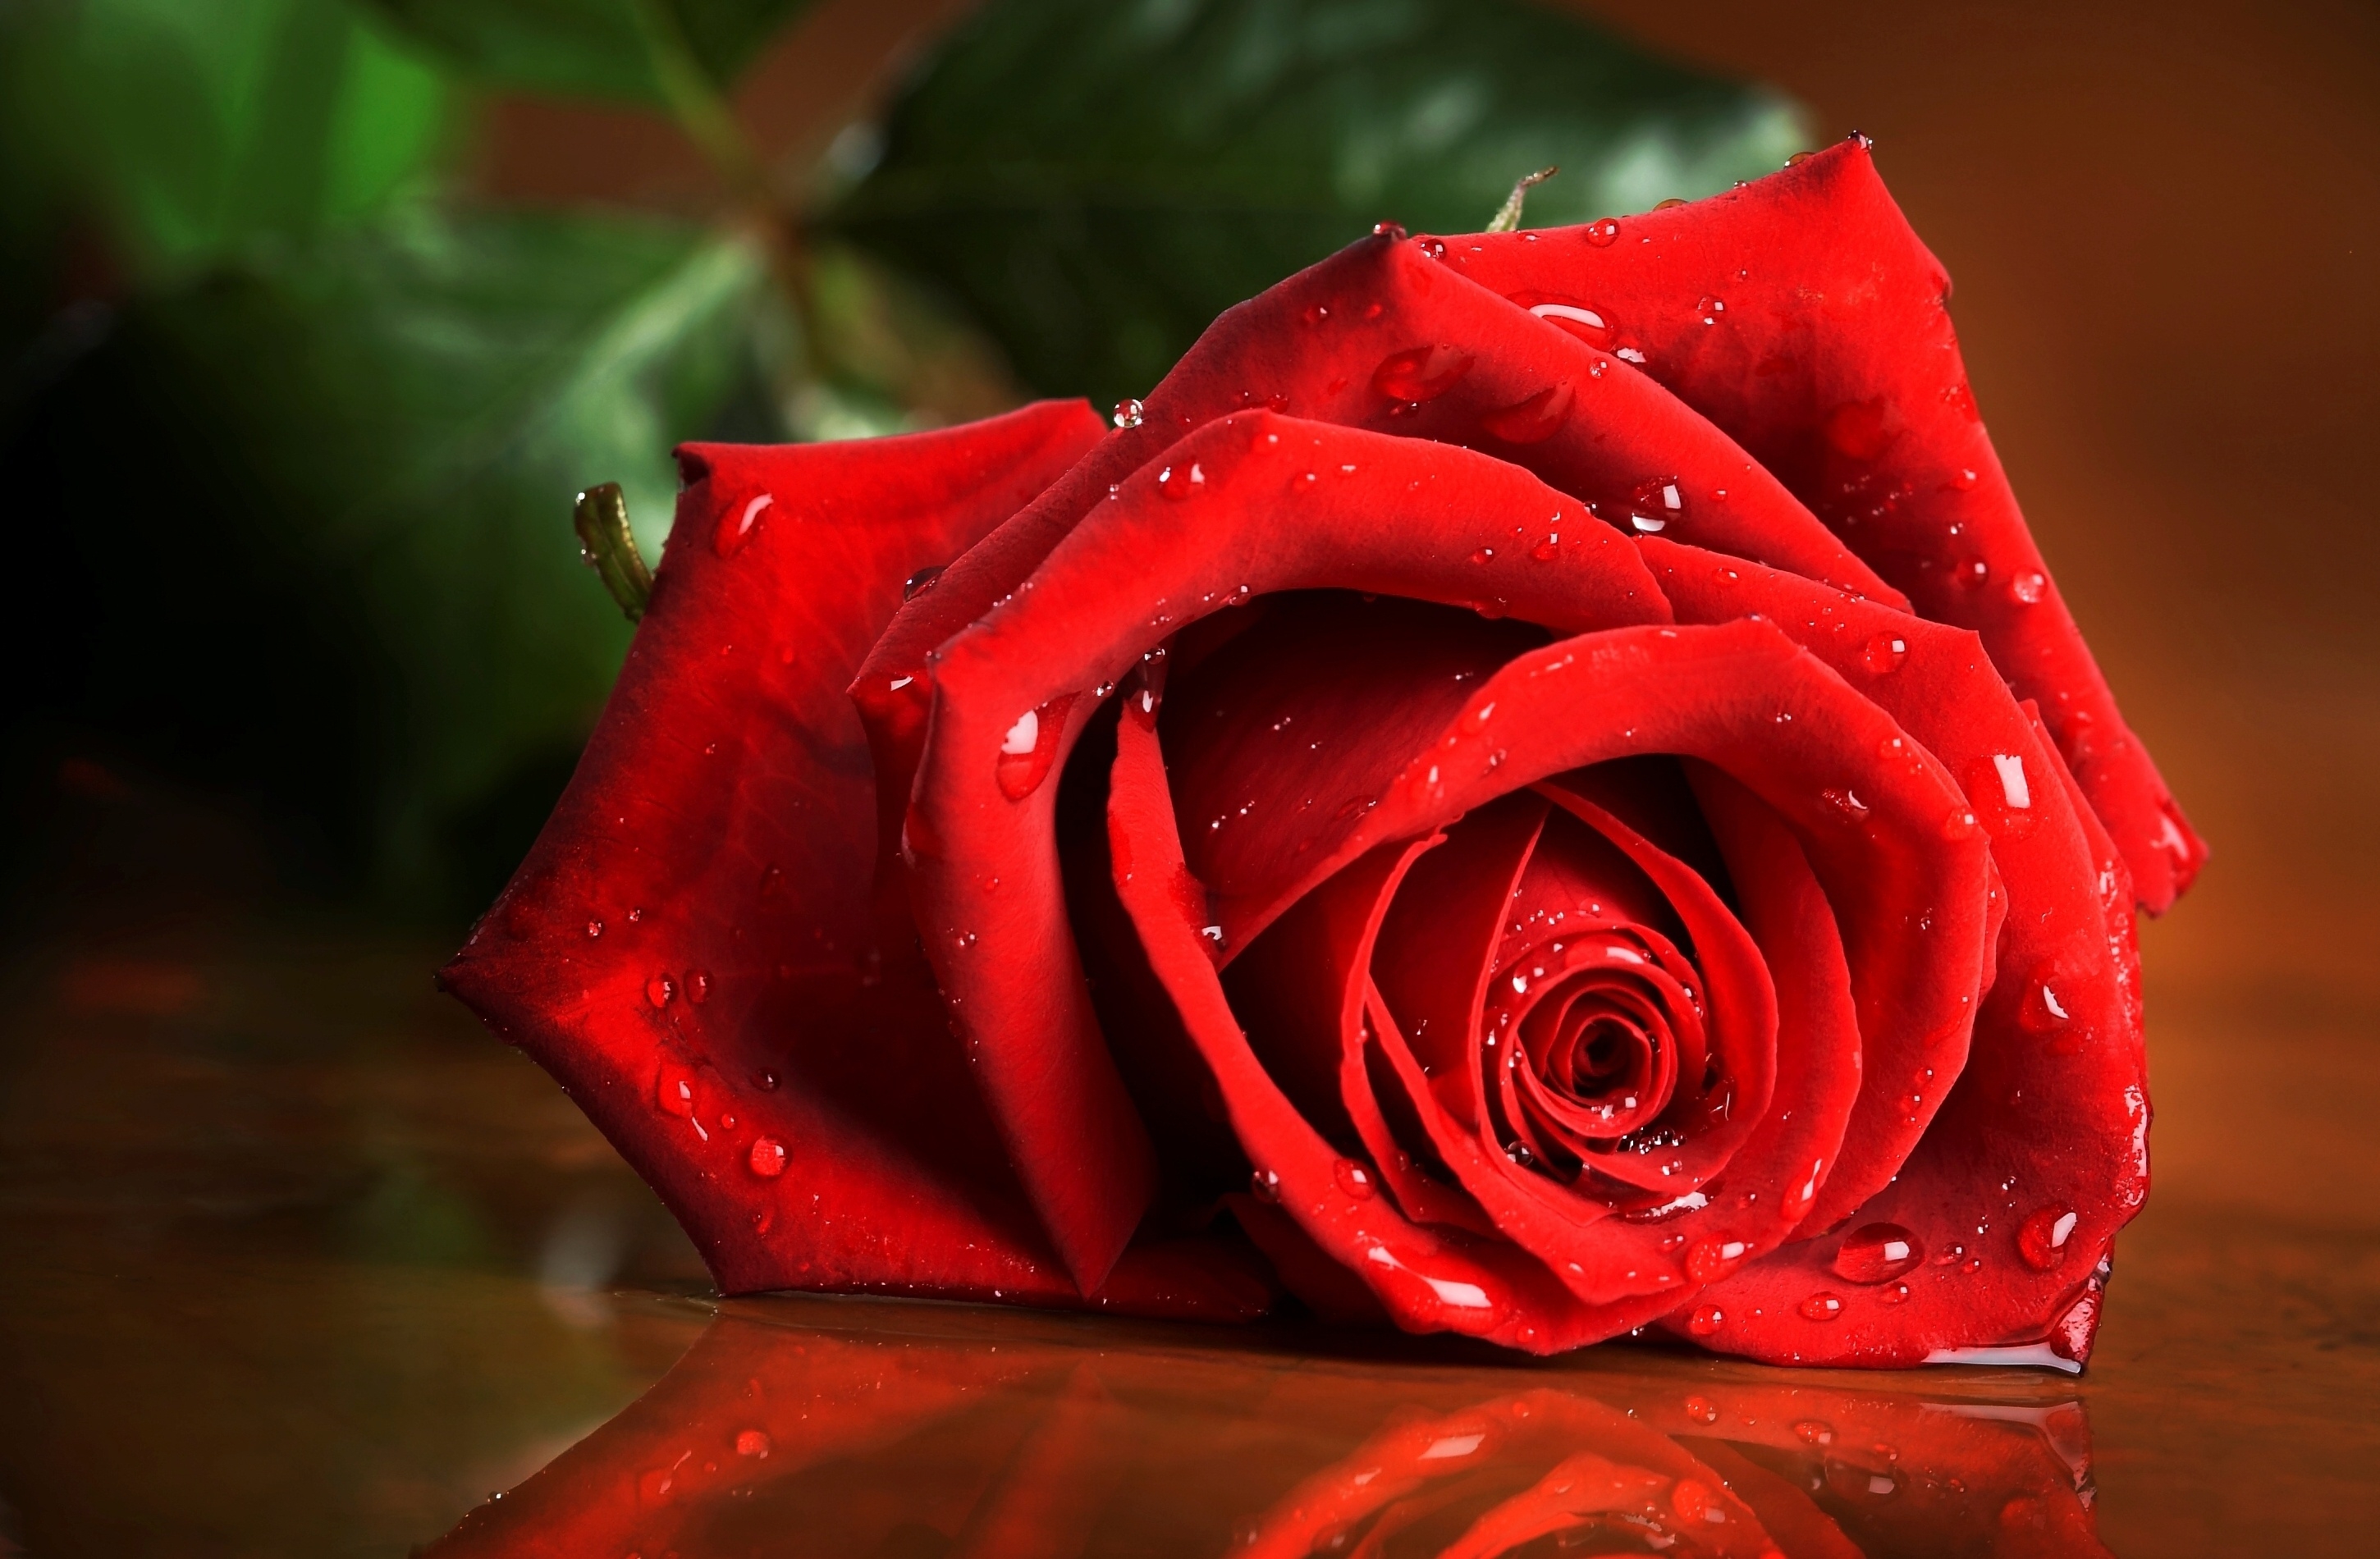 8k Red Rose Images